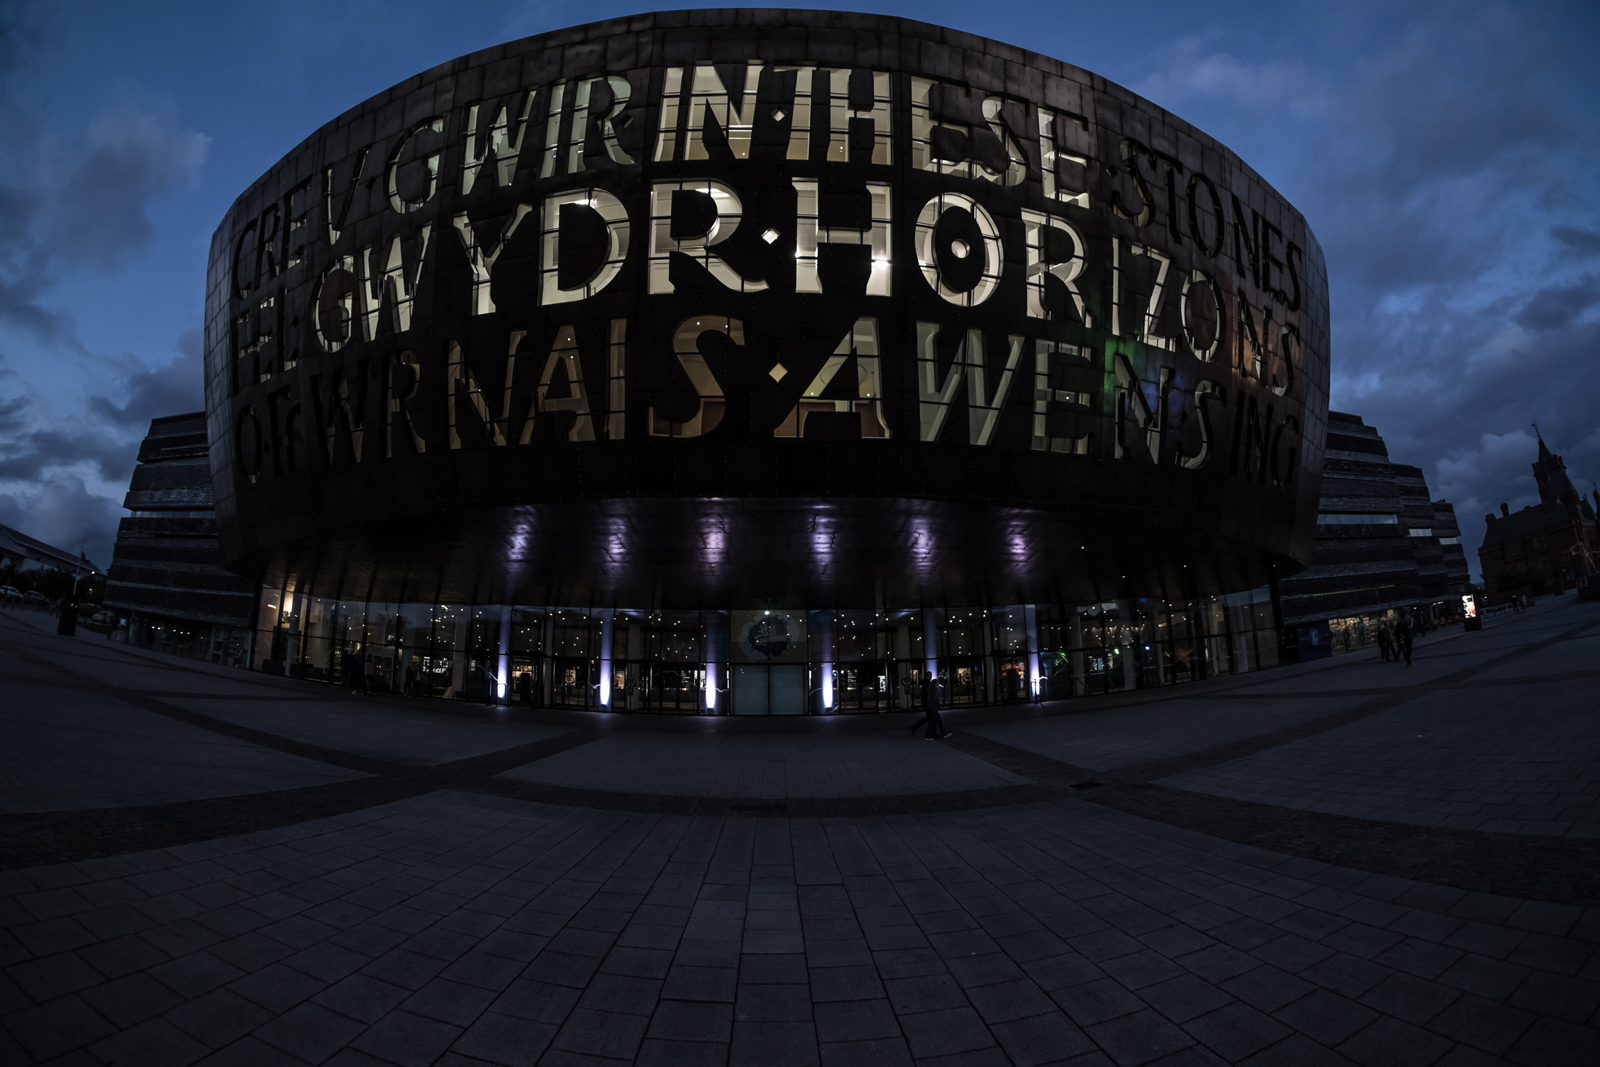 Millenium Centre Cardiff